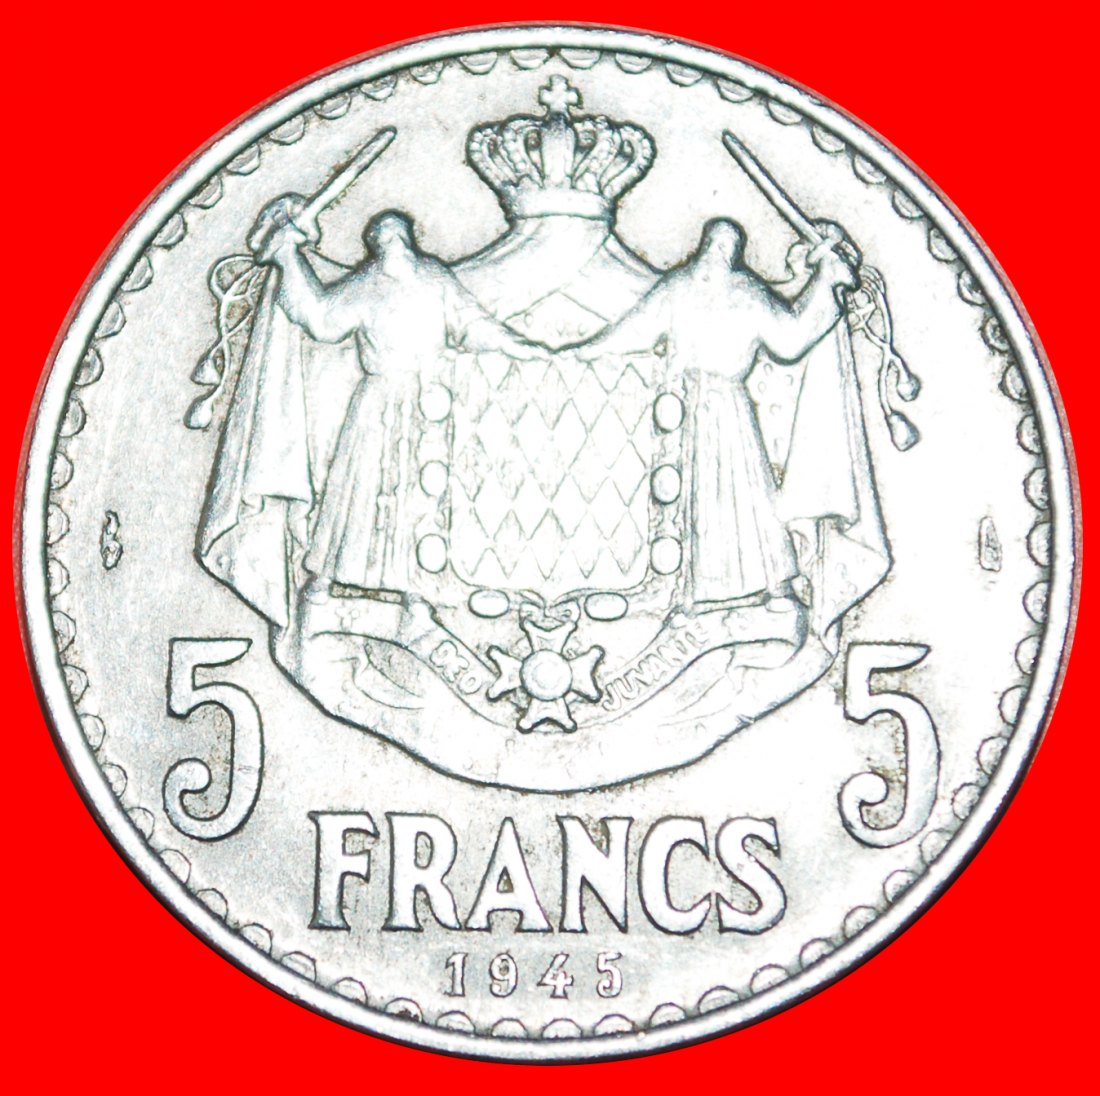  • FRANKREICH: MONACO ★ 5 FRANCS 1945 UNGEWÖHNLICH! OHNE VORBEHALT!   